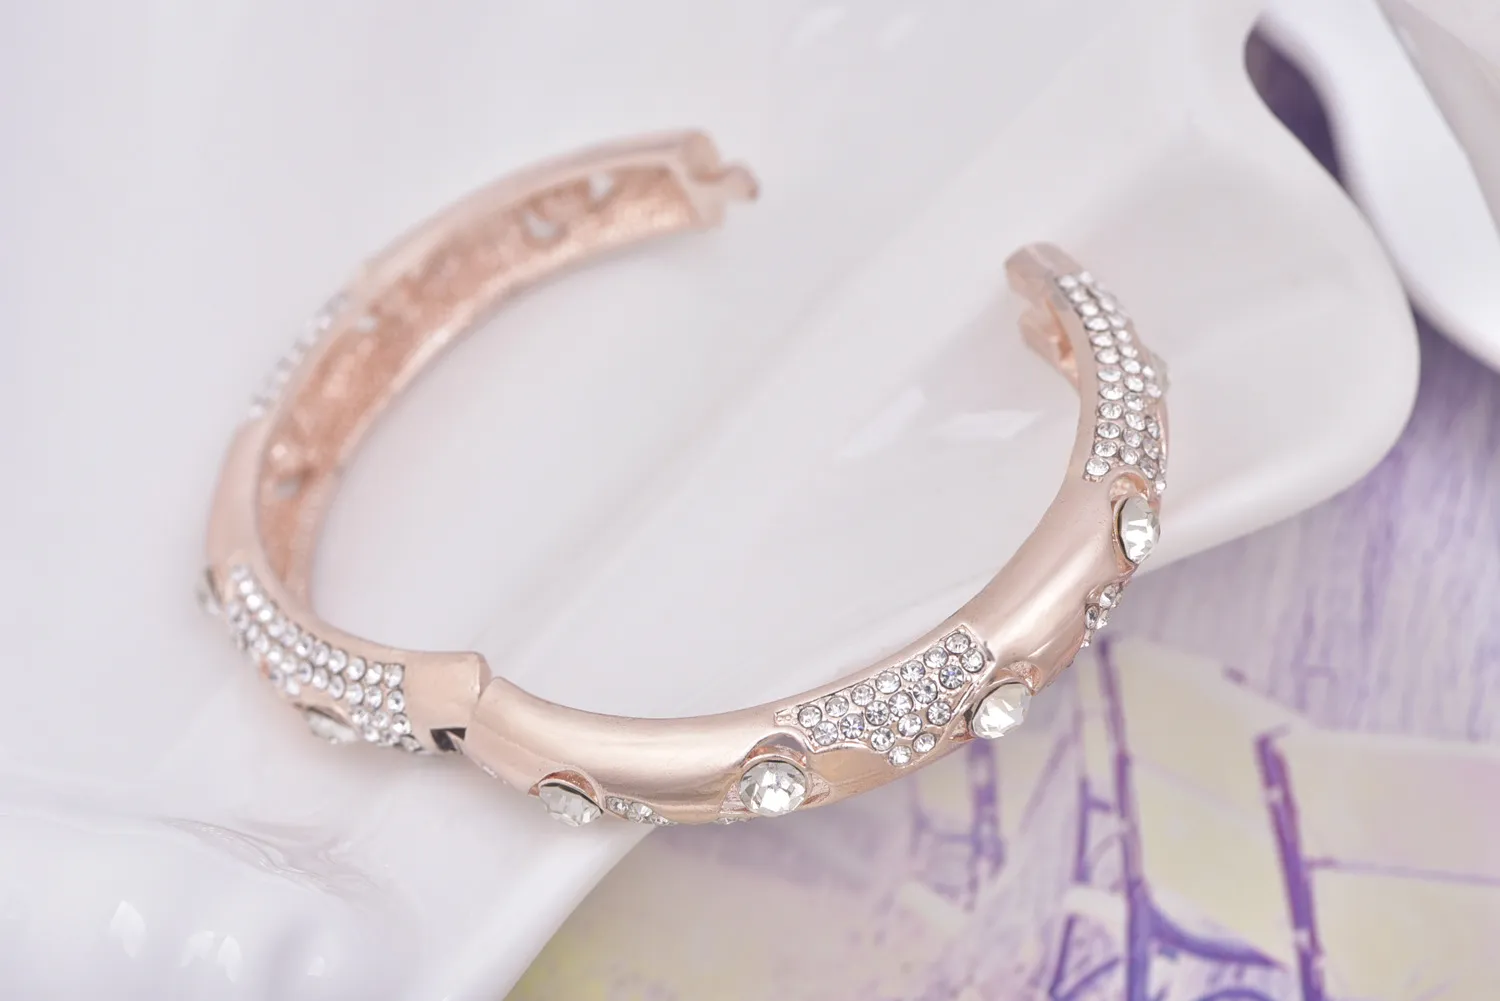 Produttori all'ingrosso di braccialetti di usura della regina del braccialetto rotondo della boutique di modo dell'arco del diamante del braccialetto all'ingrosso esagerato stabilito all'ingrosso